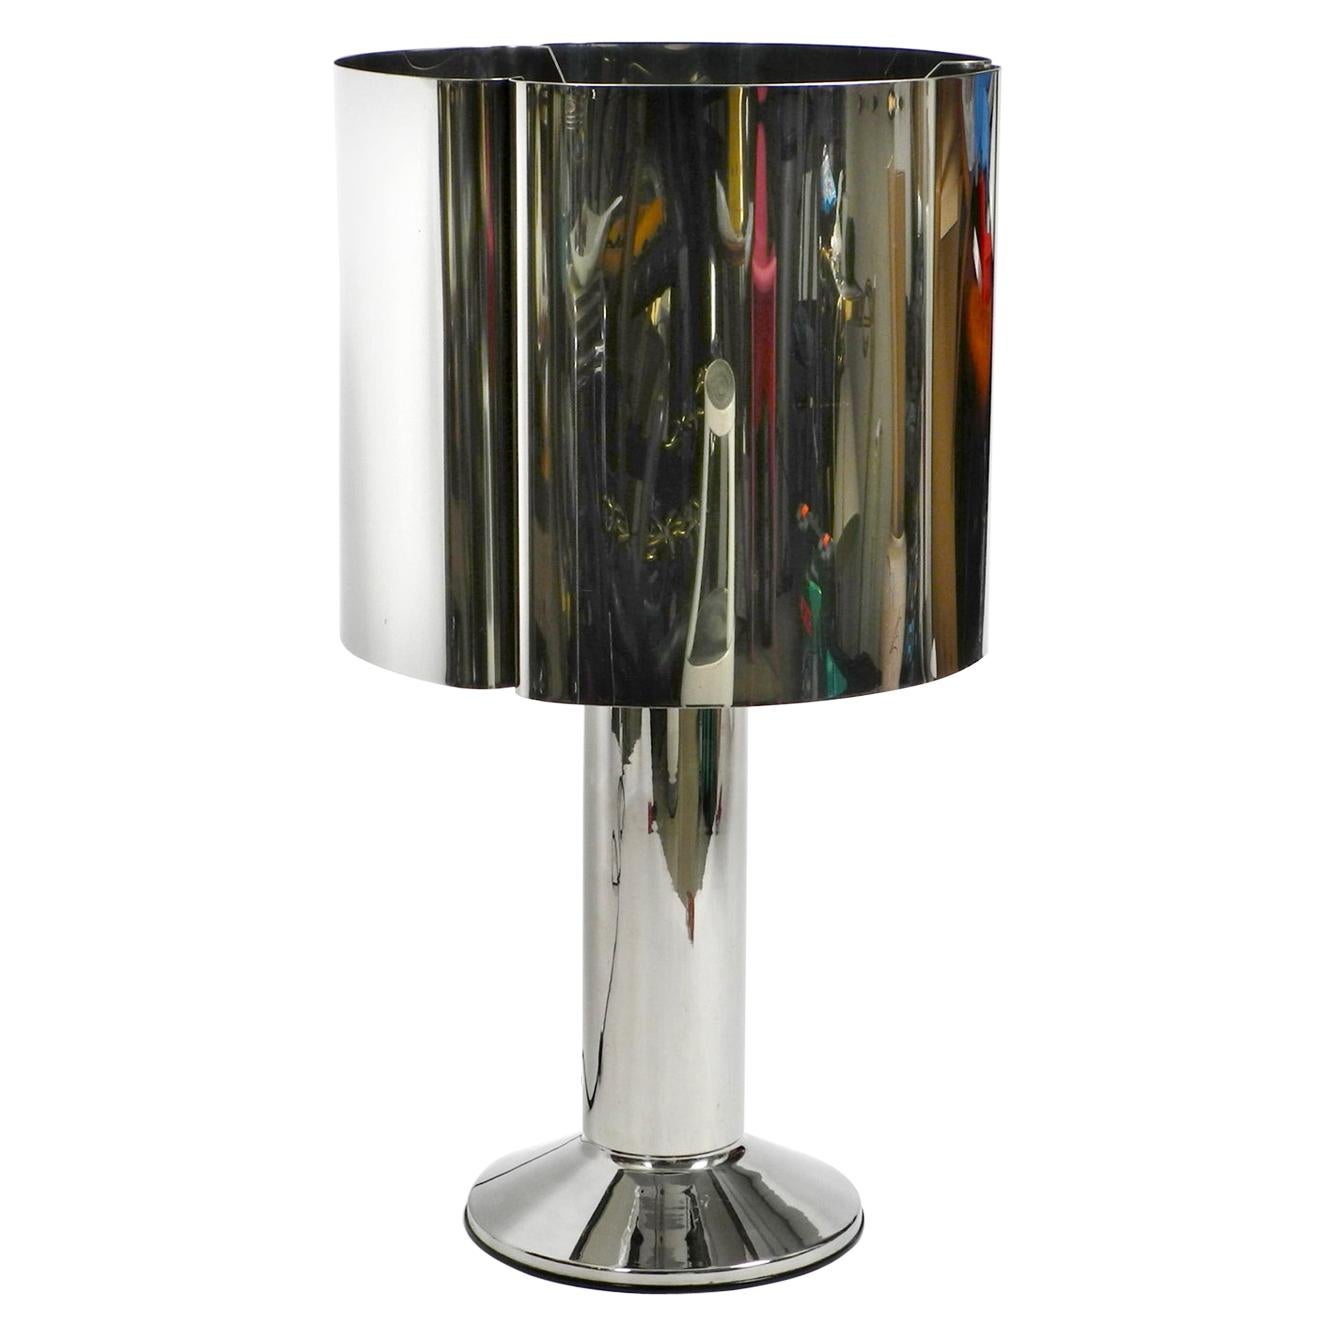 Lampe de table unique, lourde et massive XXL des années 1970 en métal chromé avec abat-jour en métal